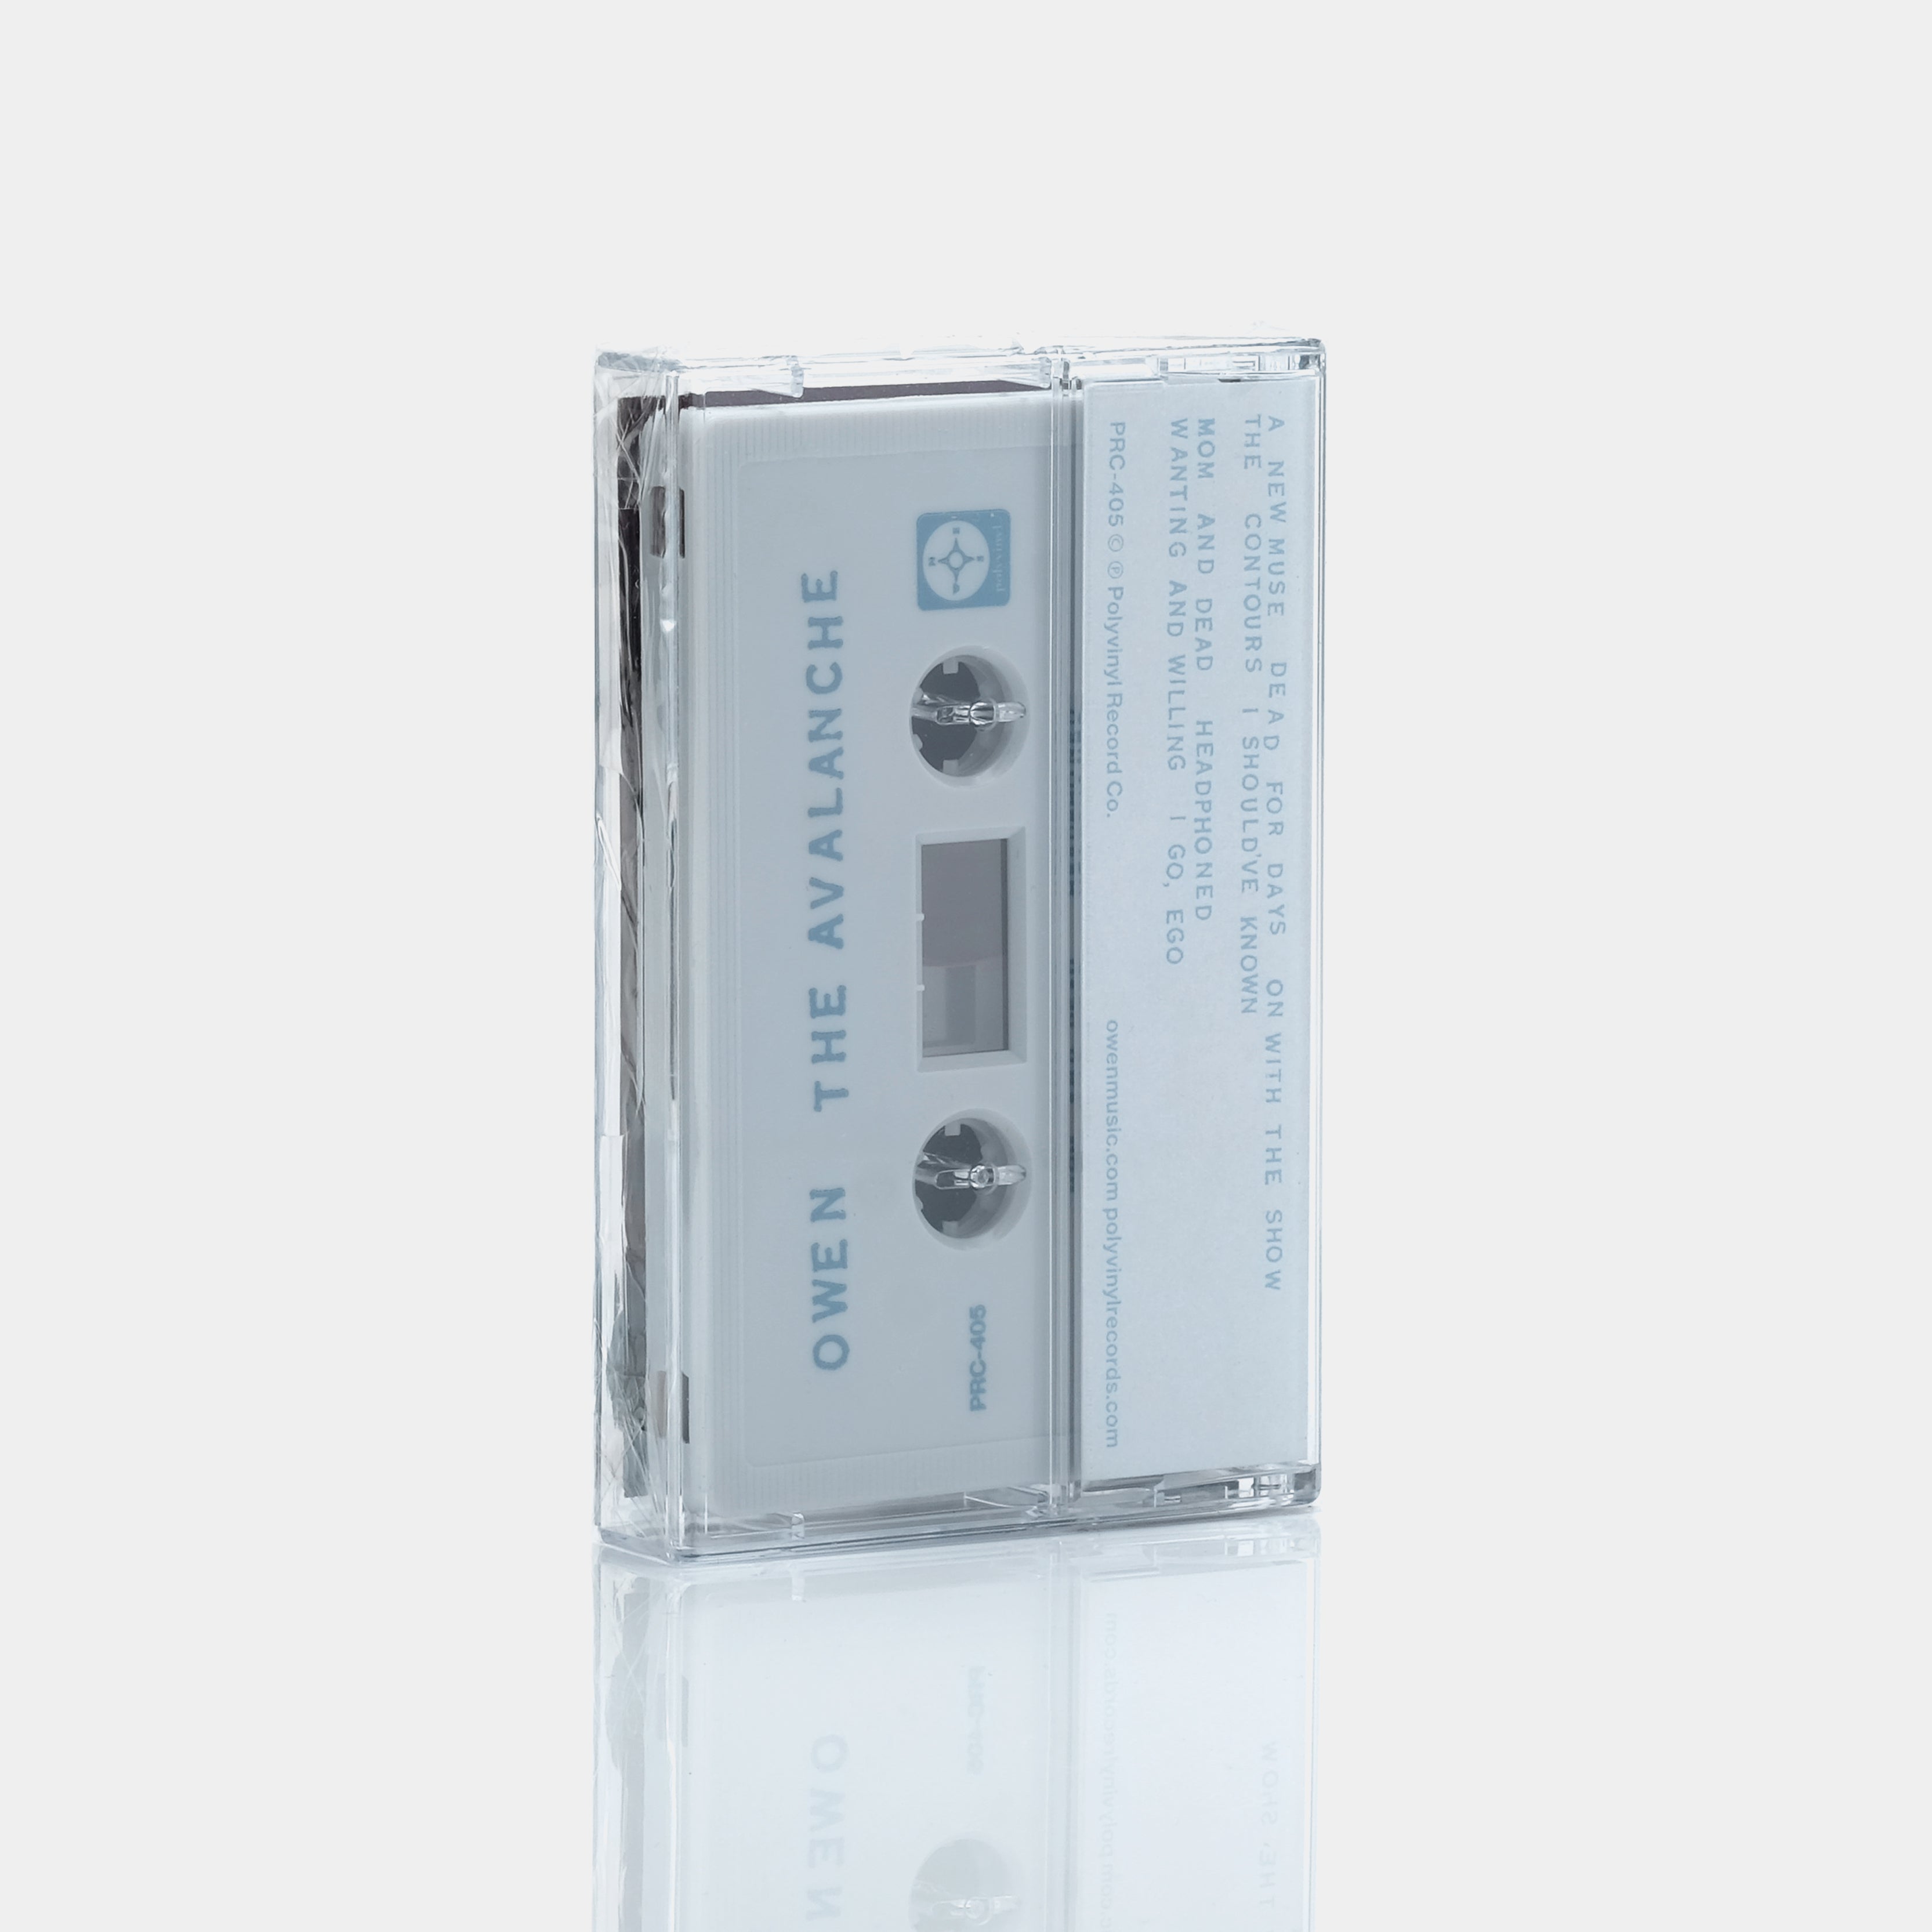 Owen - The Avalanche Cassette Tape